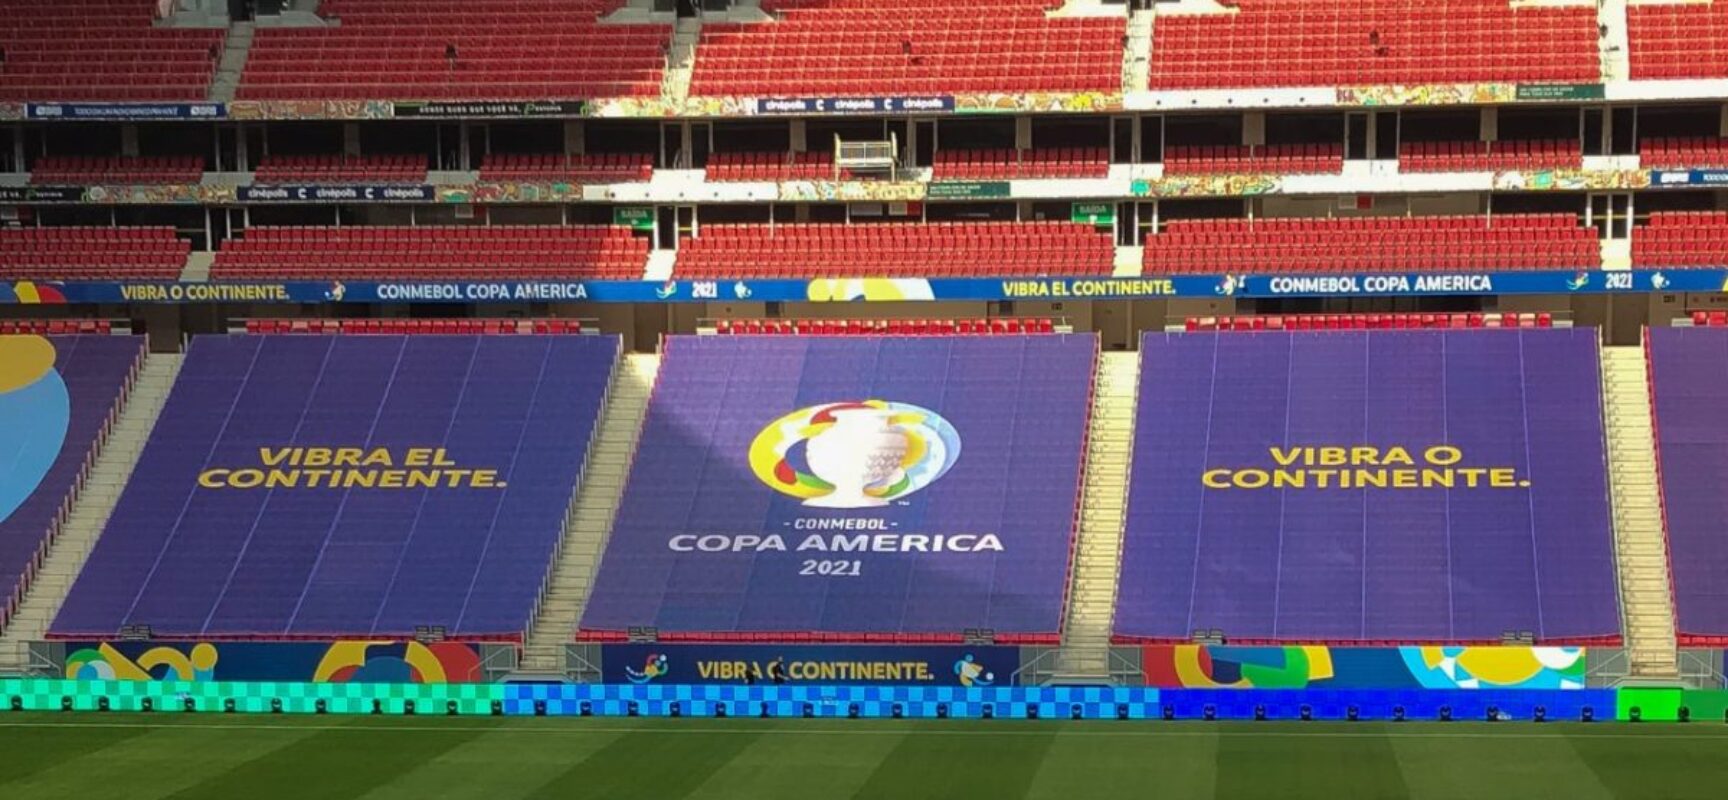 Taxa de incidência de Covid-19 na Copa América é maior que no país inteiro